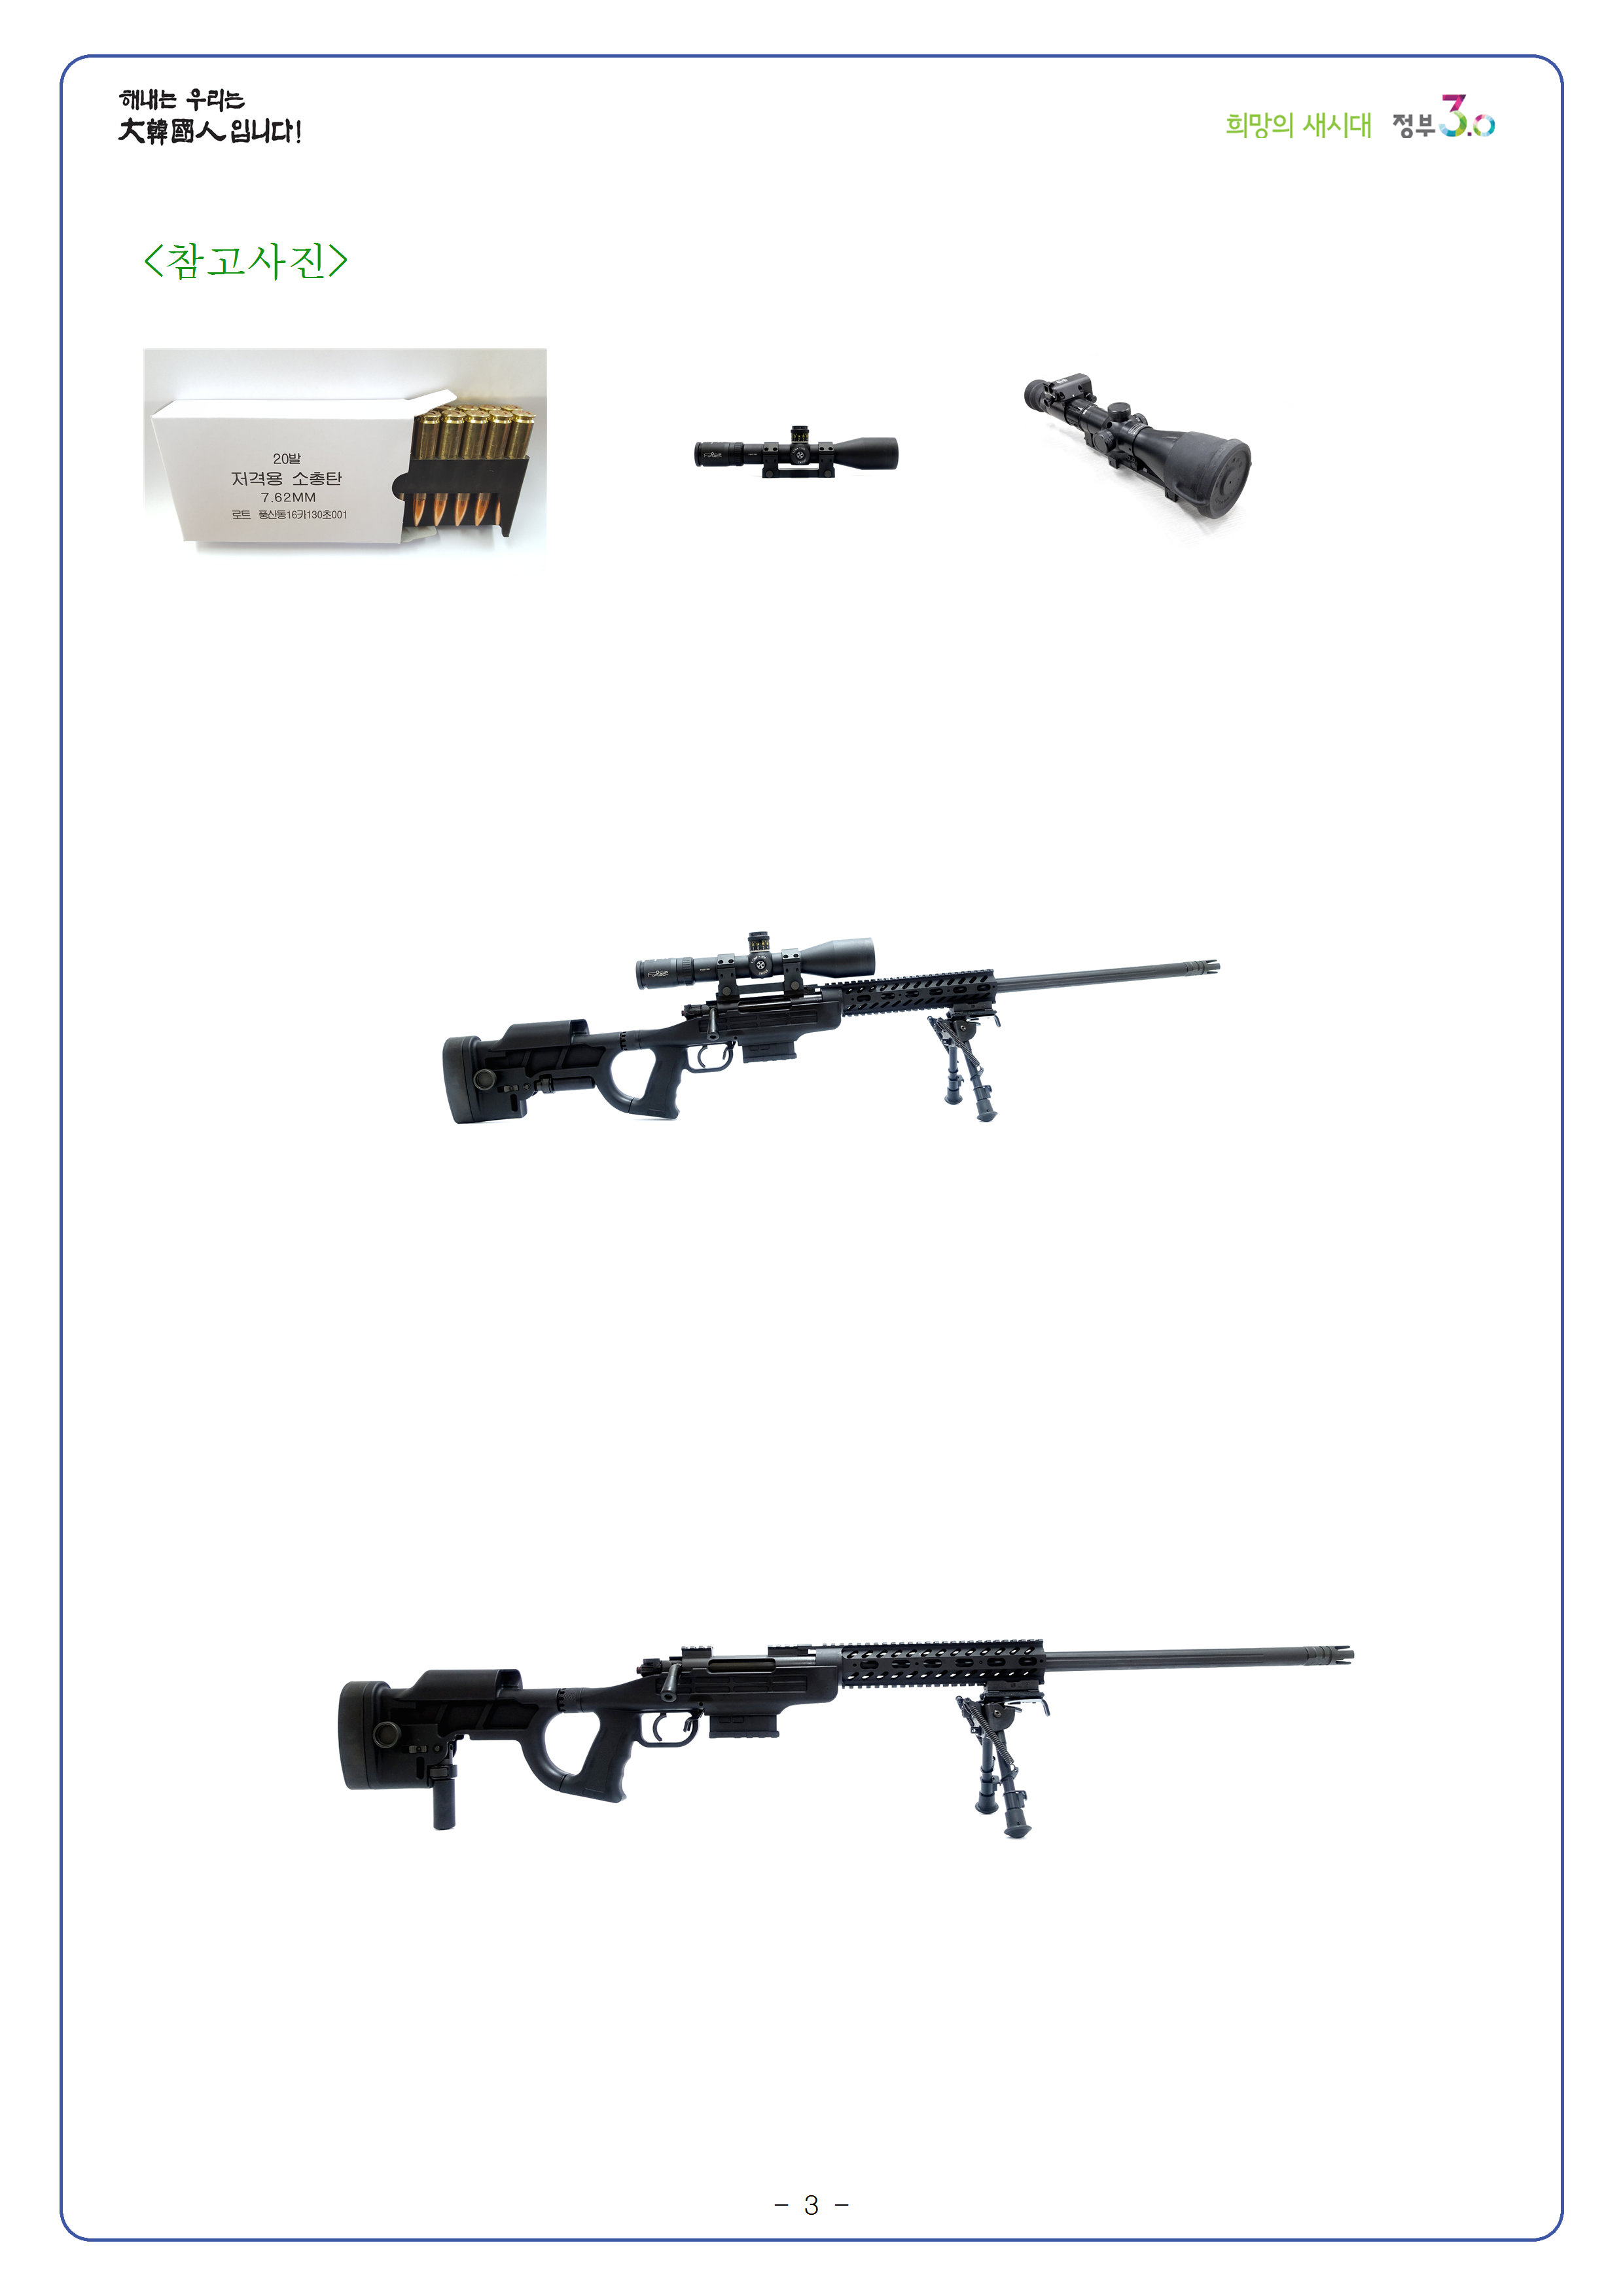 20161231_방위사업청%2C K-14 저격용 소총 체계 국산화 완료003.png